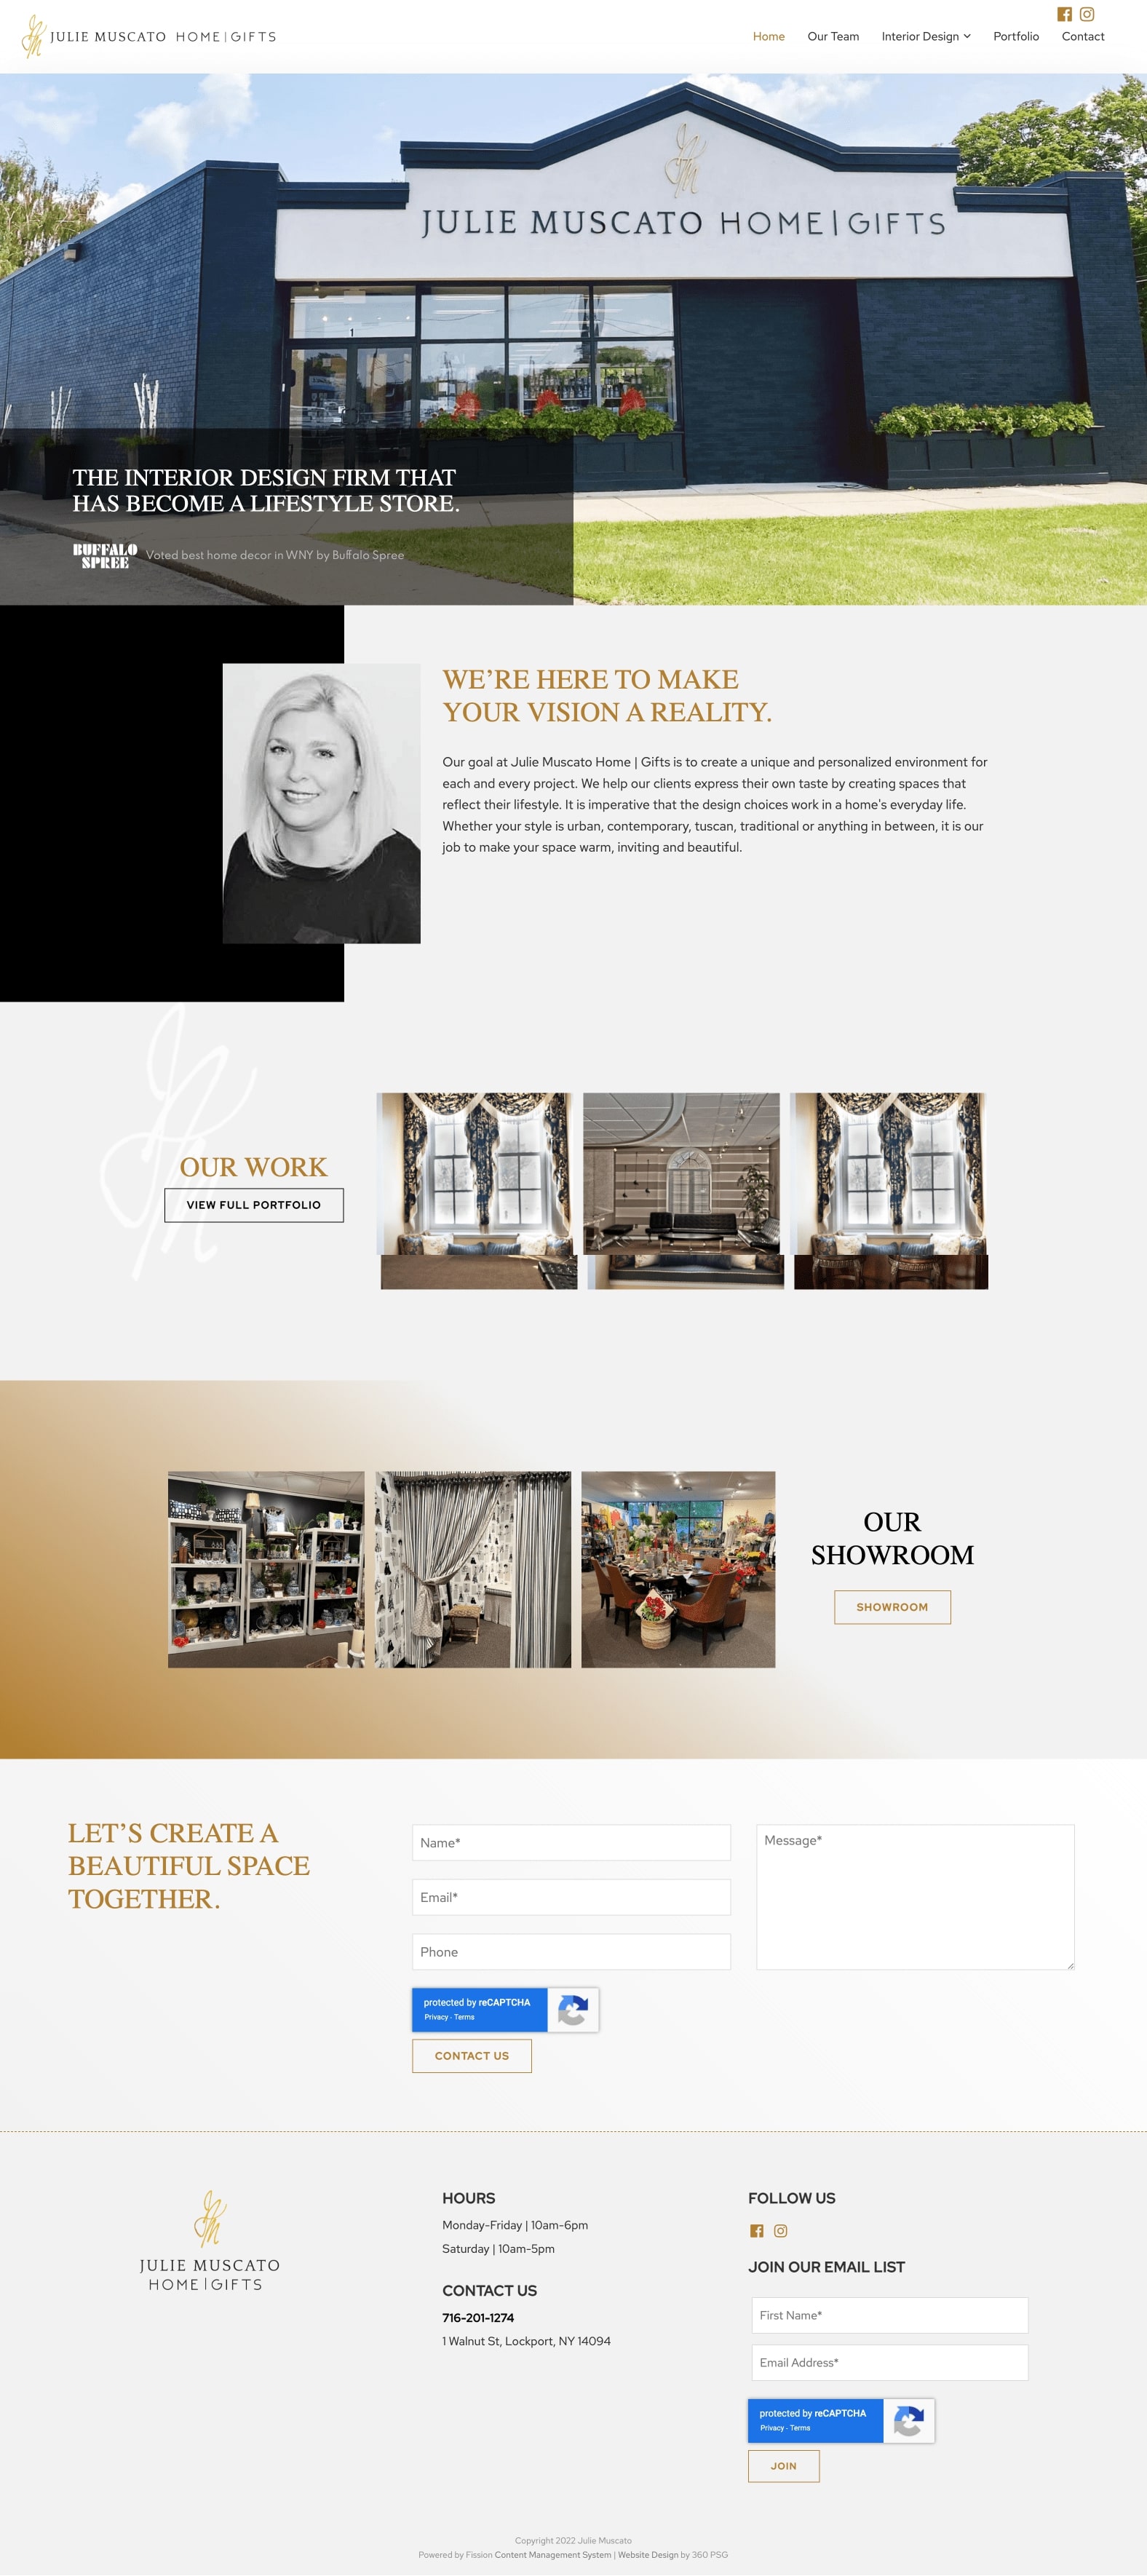 Julie Muscato Home & Gifts Website - Desktop